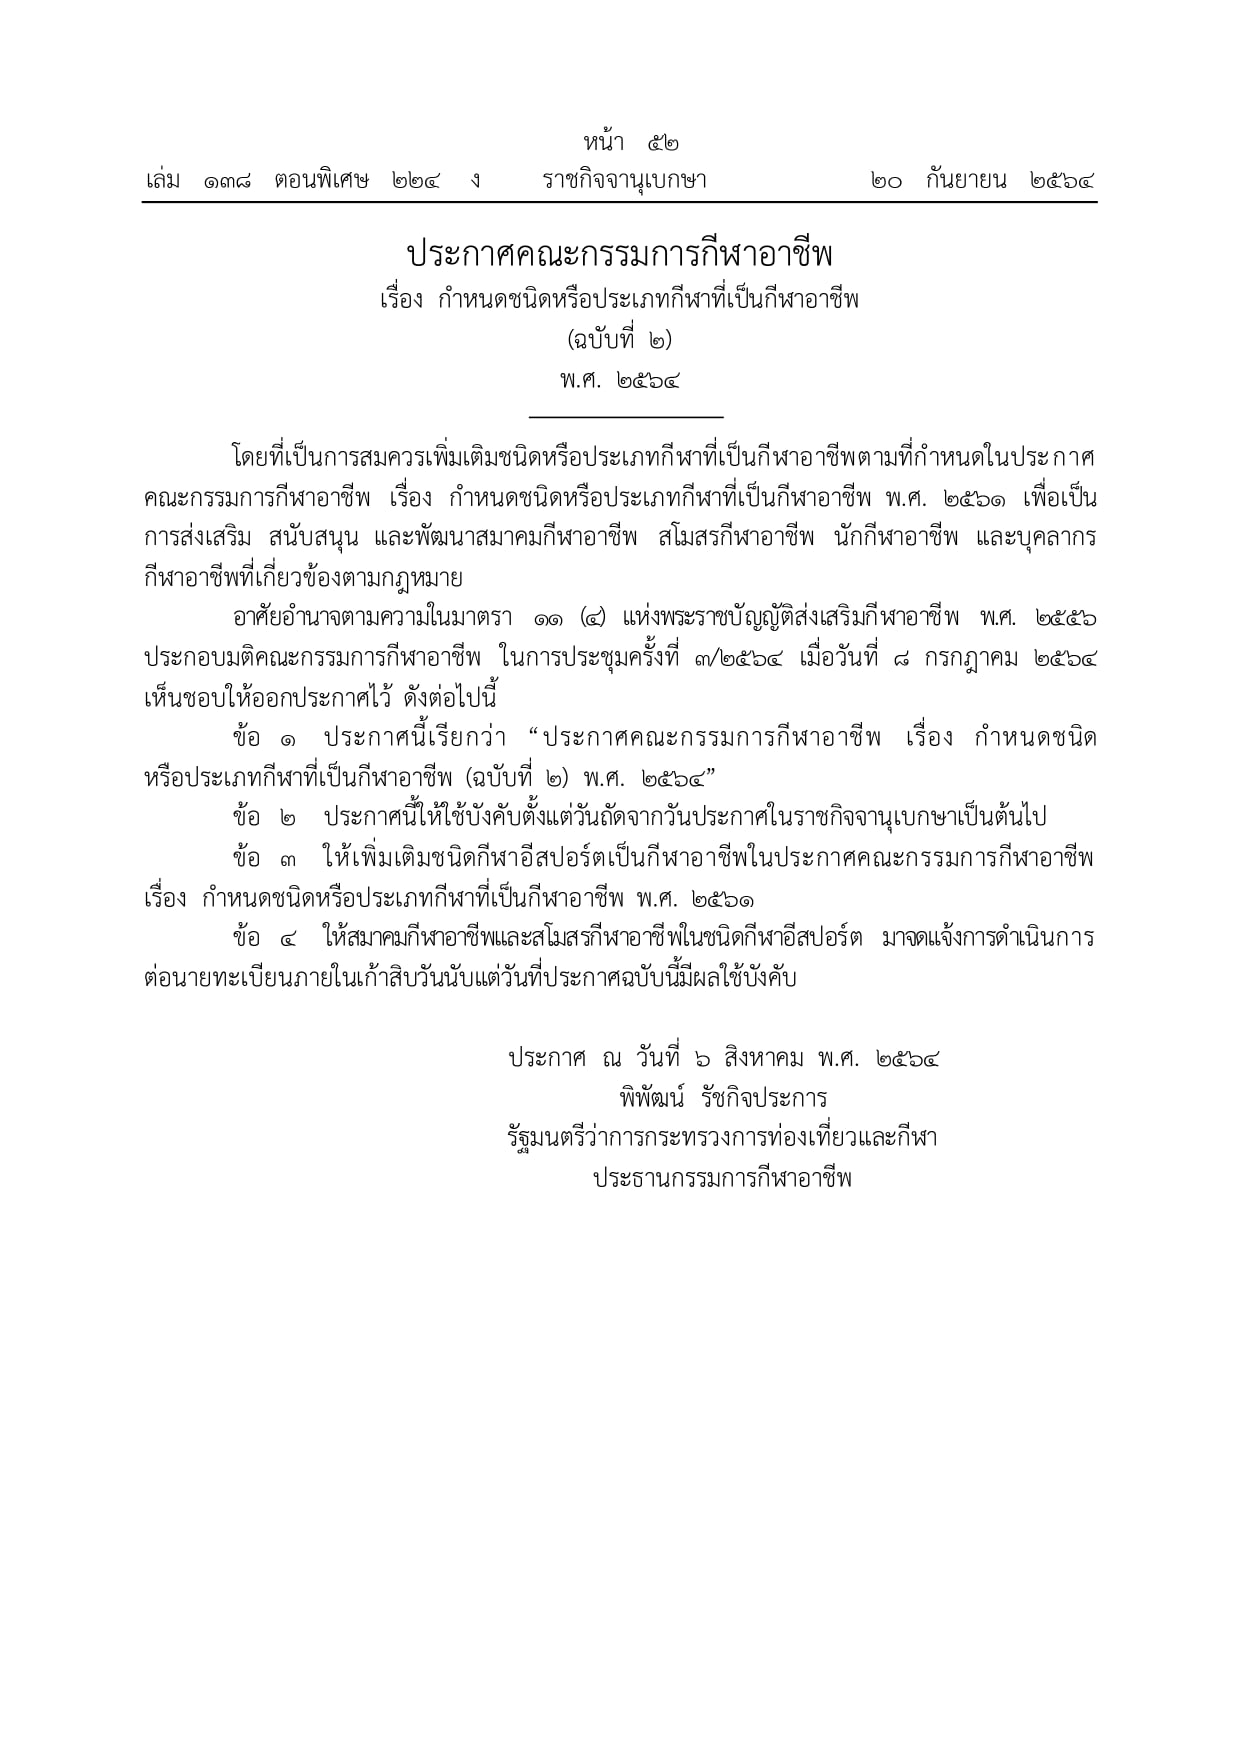 泰国官方承认电竞为正式体育项目 可获得扶持补贴